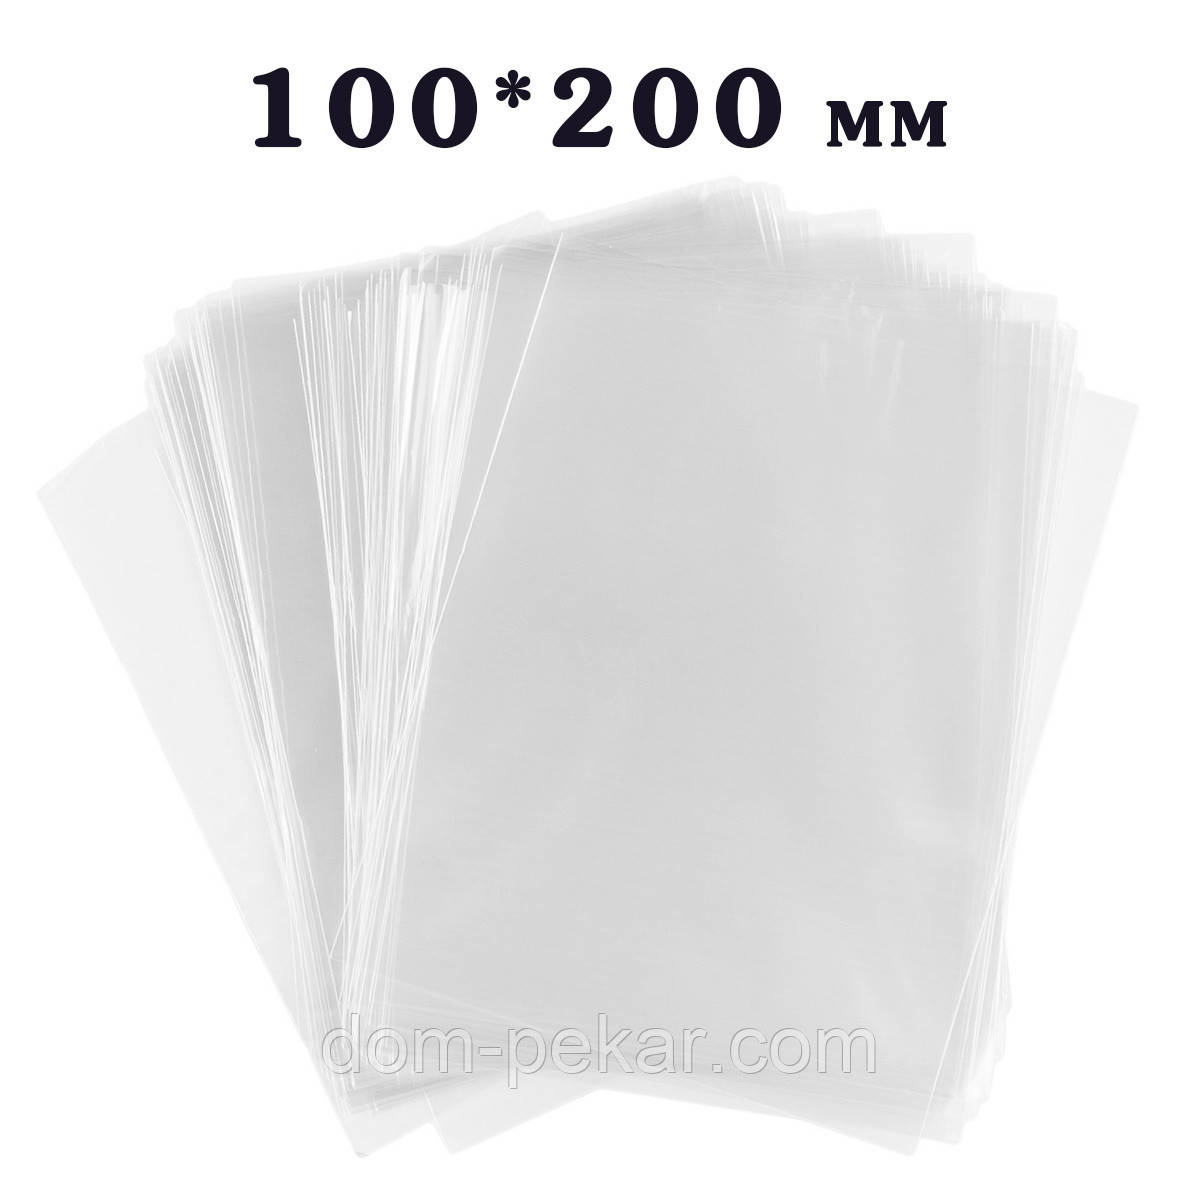 Пакет 100*200 мм для пакування пряників 25 мкм (100 шт.)